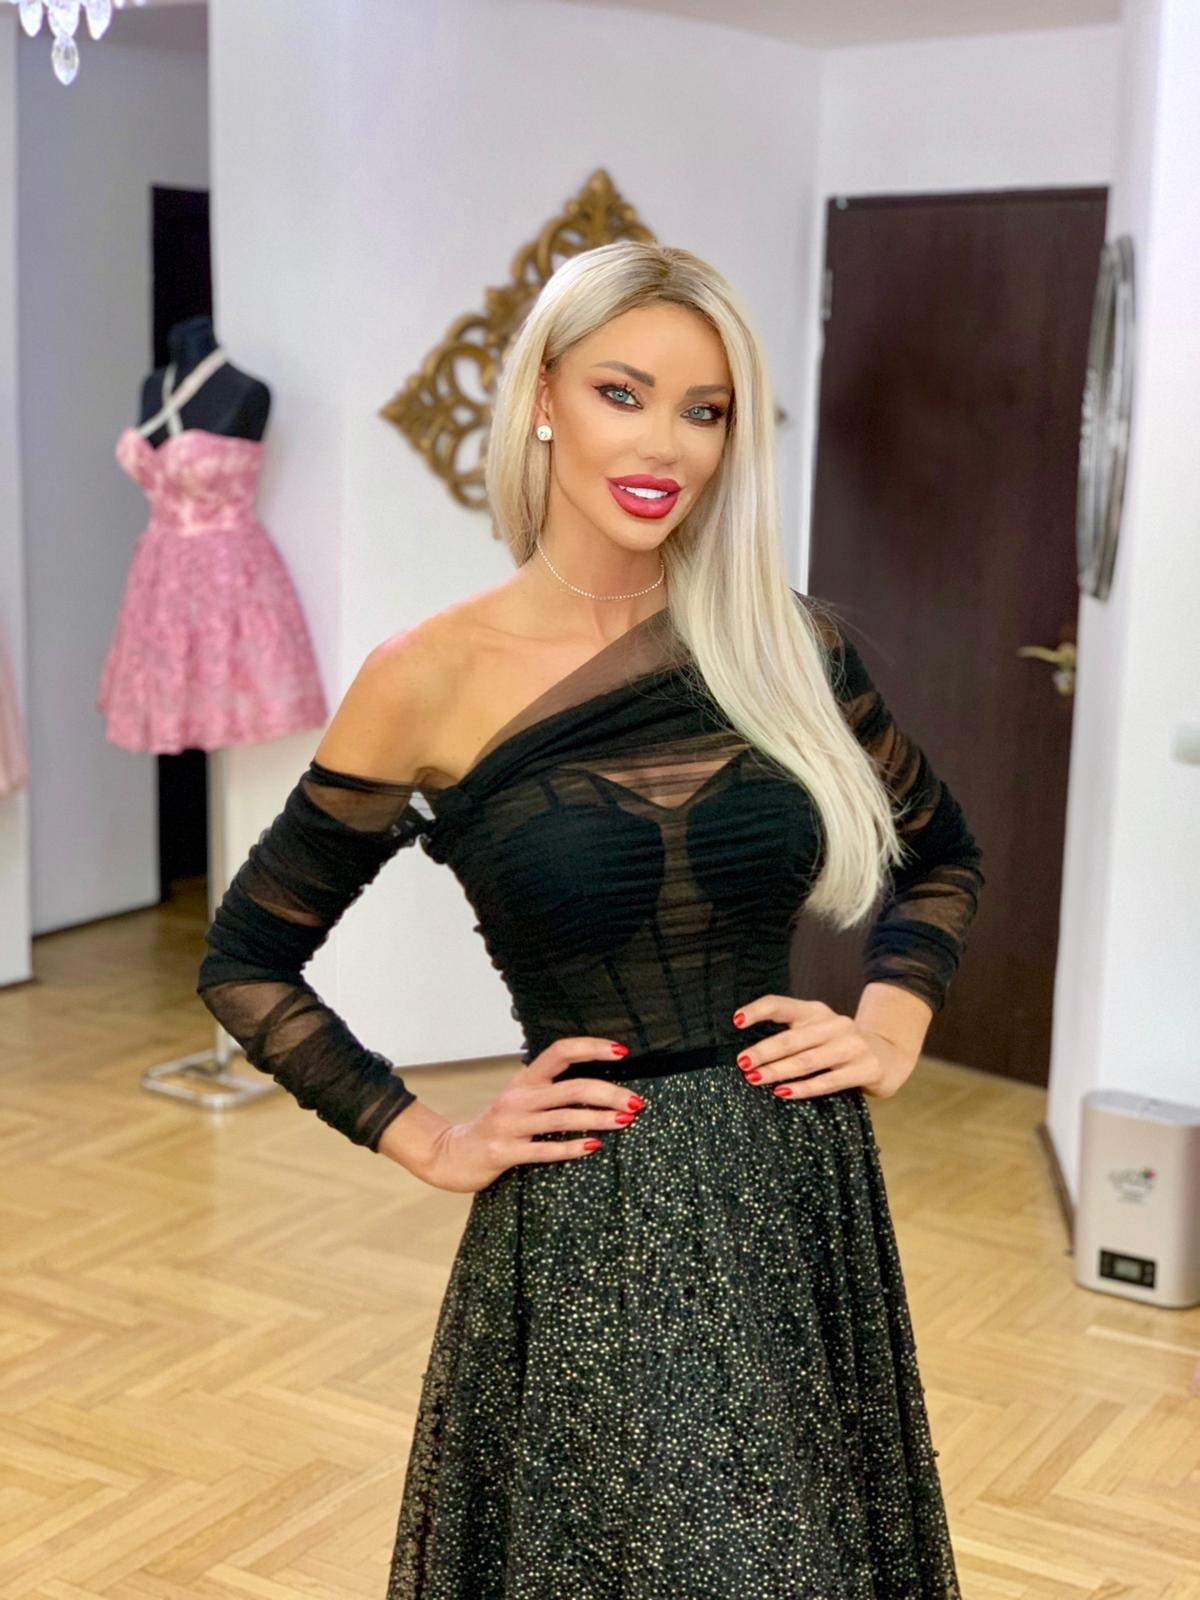 Bianca Drăgușanu a răbufnit pe Internet, după ce a fost acuzată că ar purta haine fake. Cum s-a apărat blondina: “Eu muncesc pentru banii mei și nu am vicii”